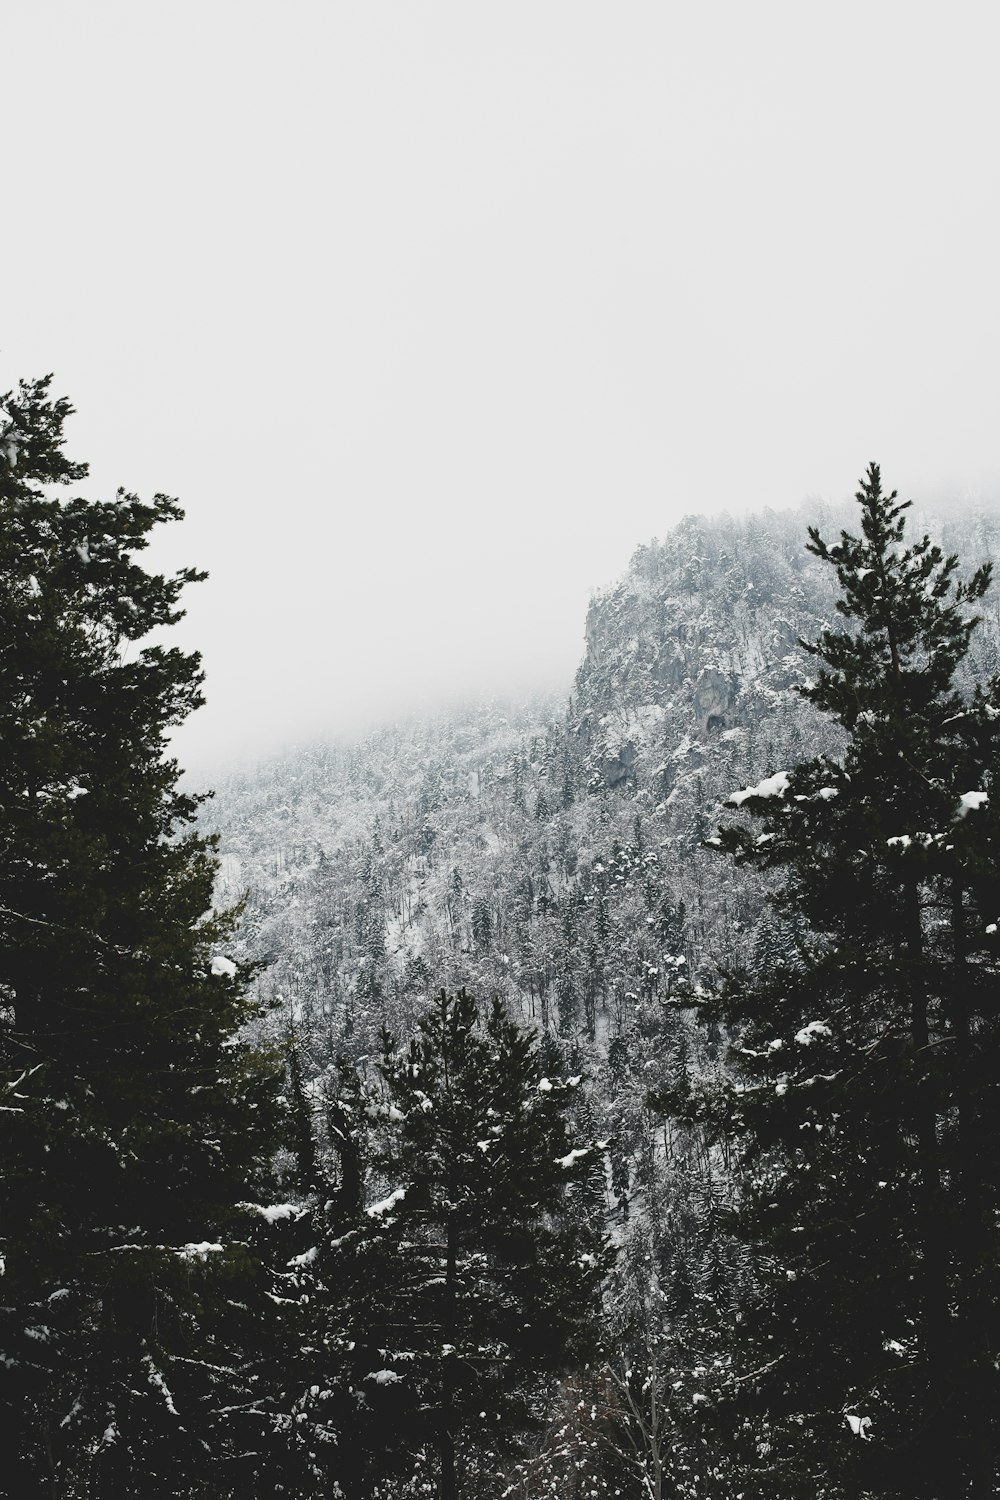 눈 덮인 산과 나무의 회색조 사진